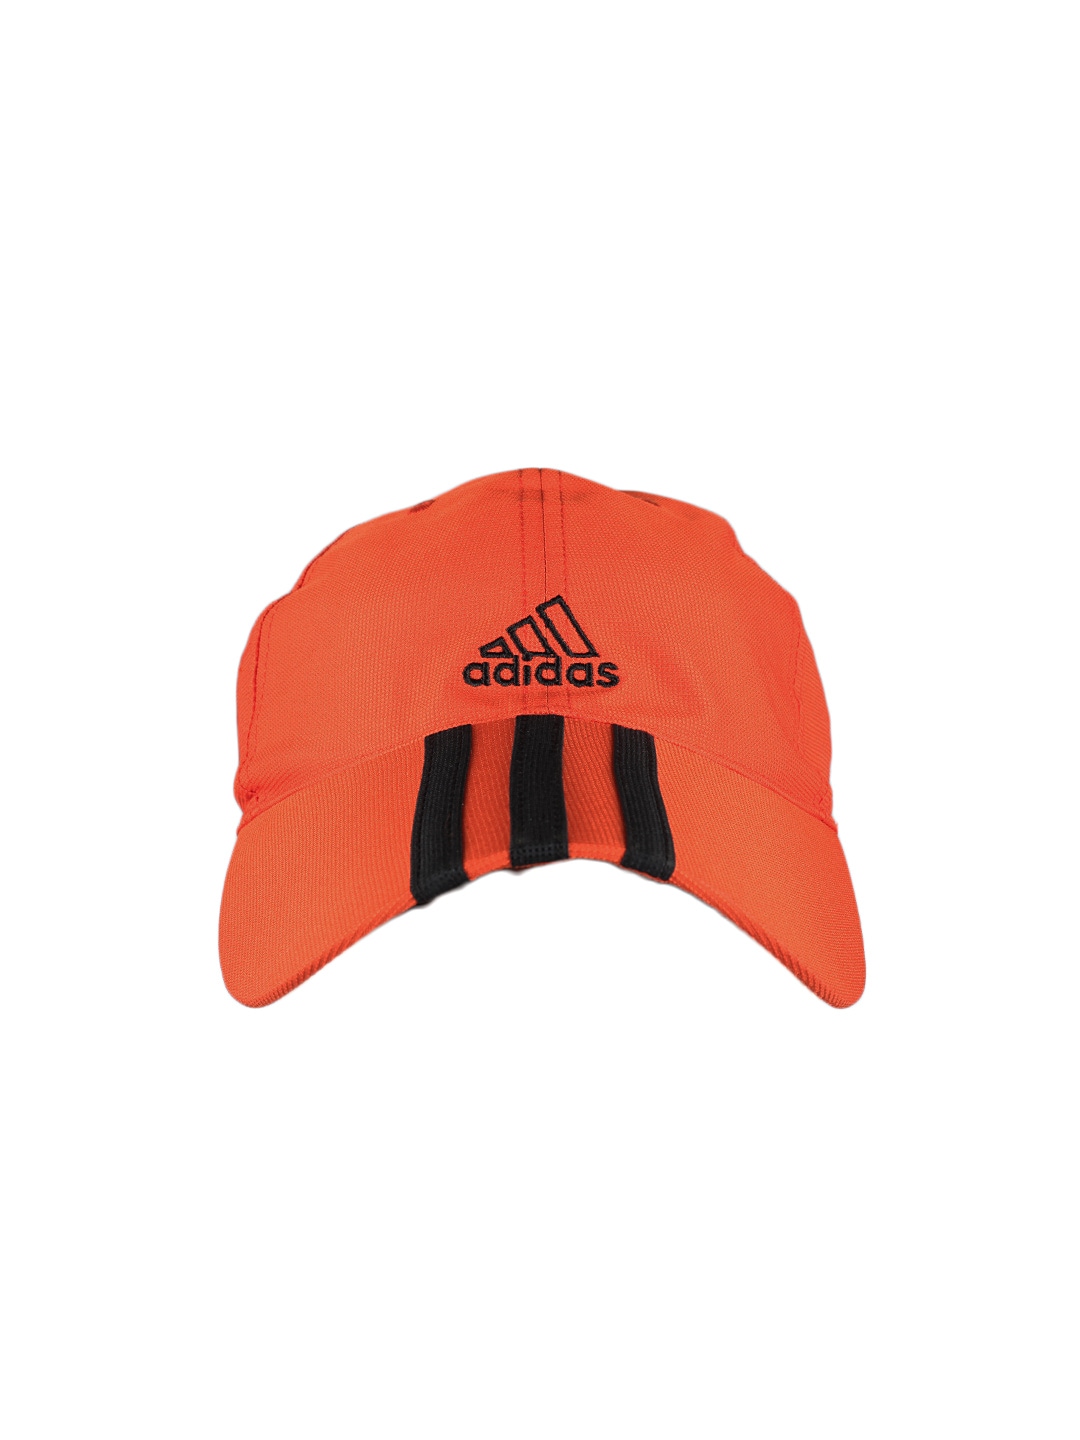 ADIDAS Unisex Orange Cap